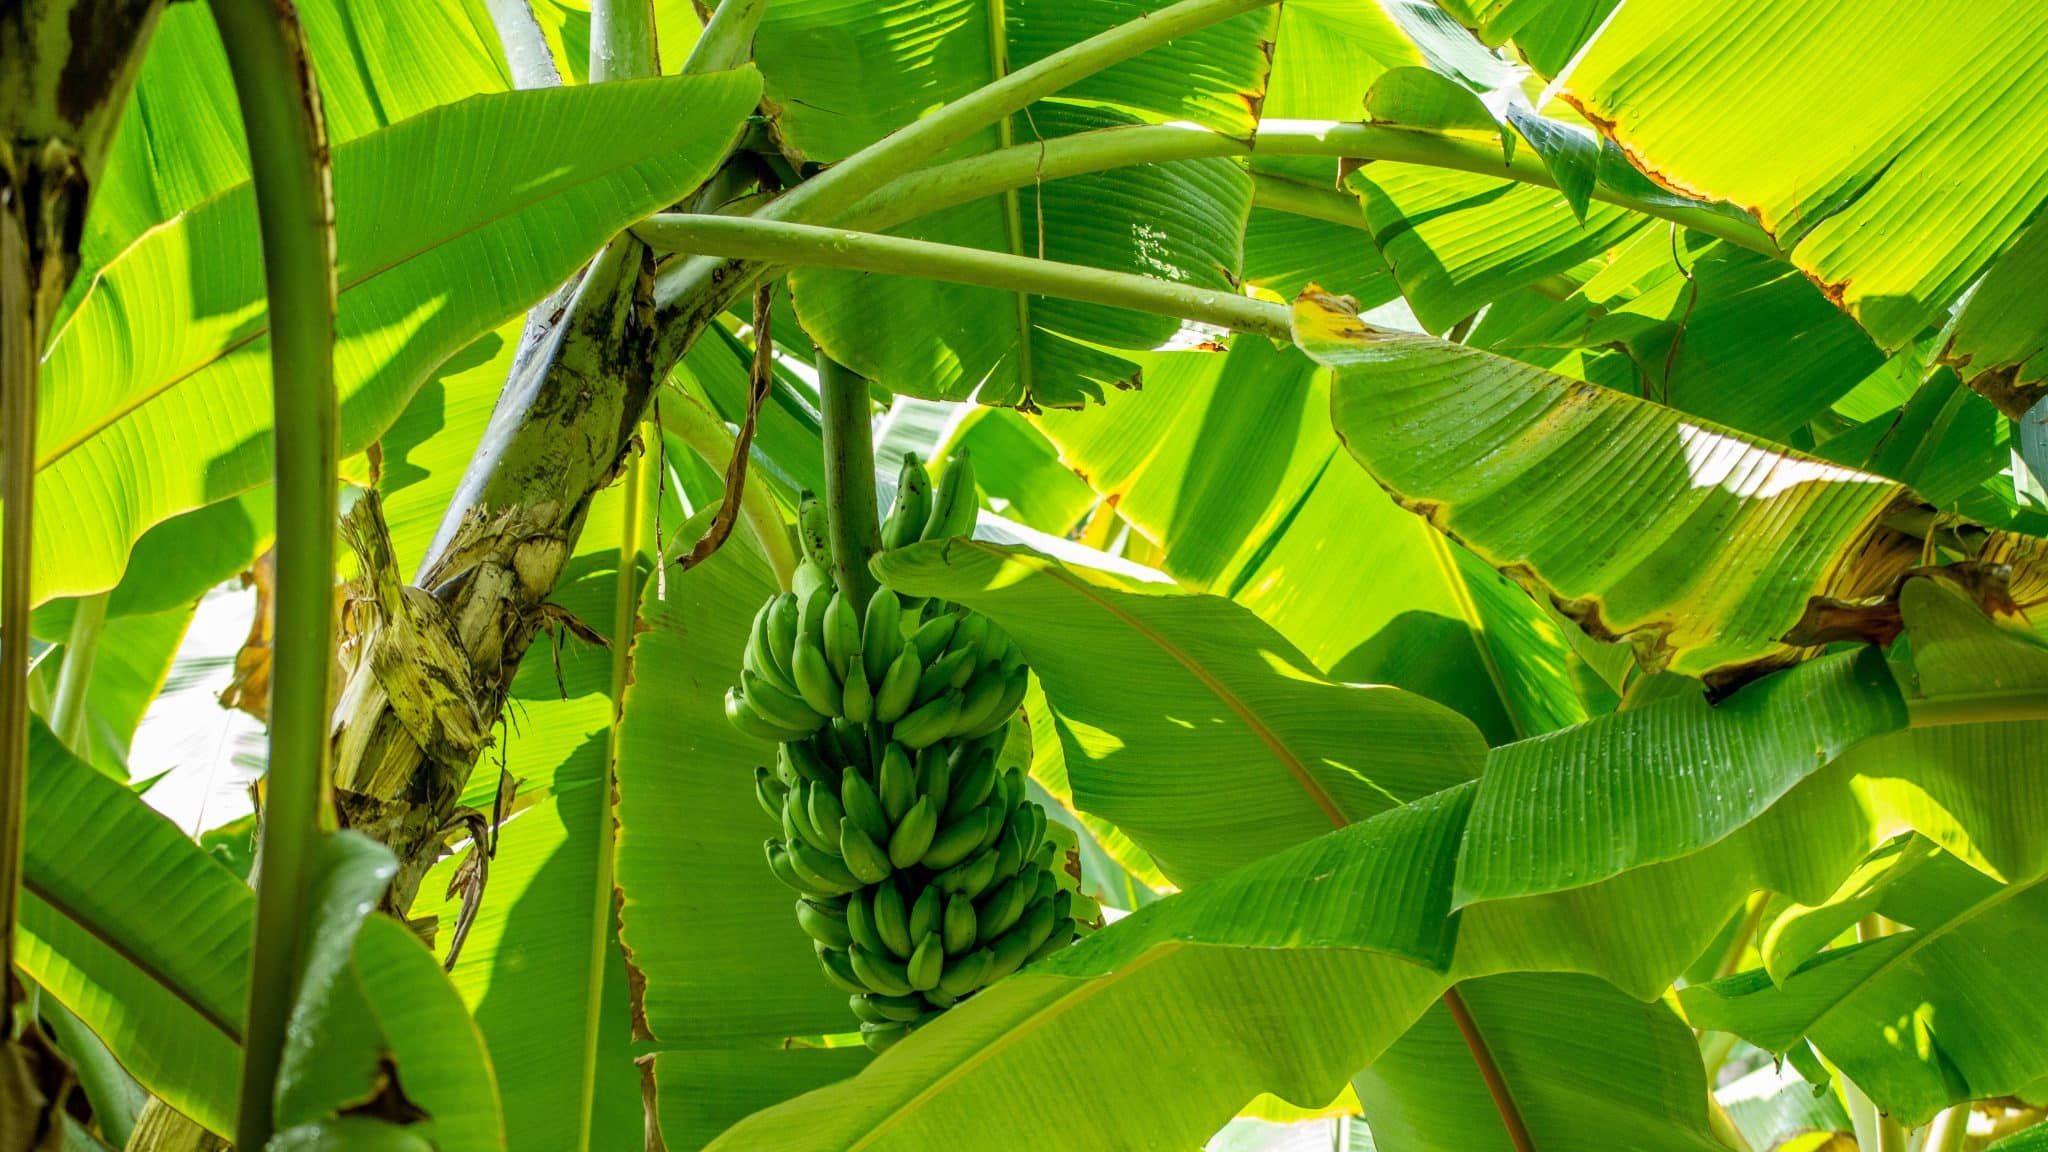 Comment transformer les bananiers en vêtements écologiques ?